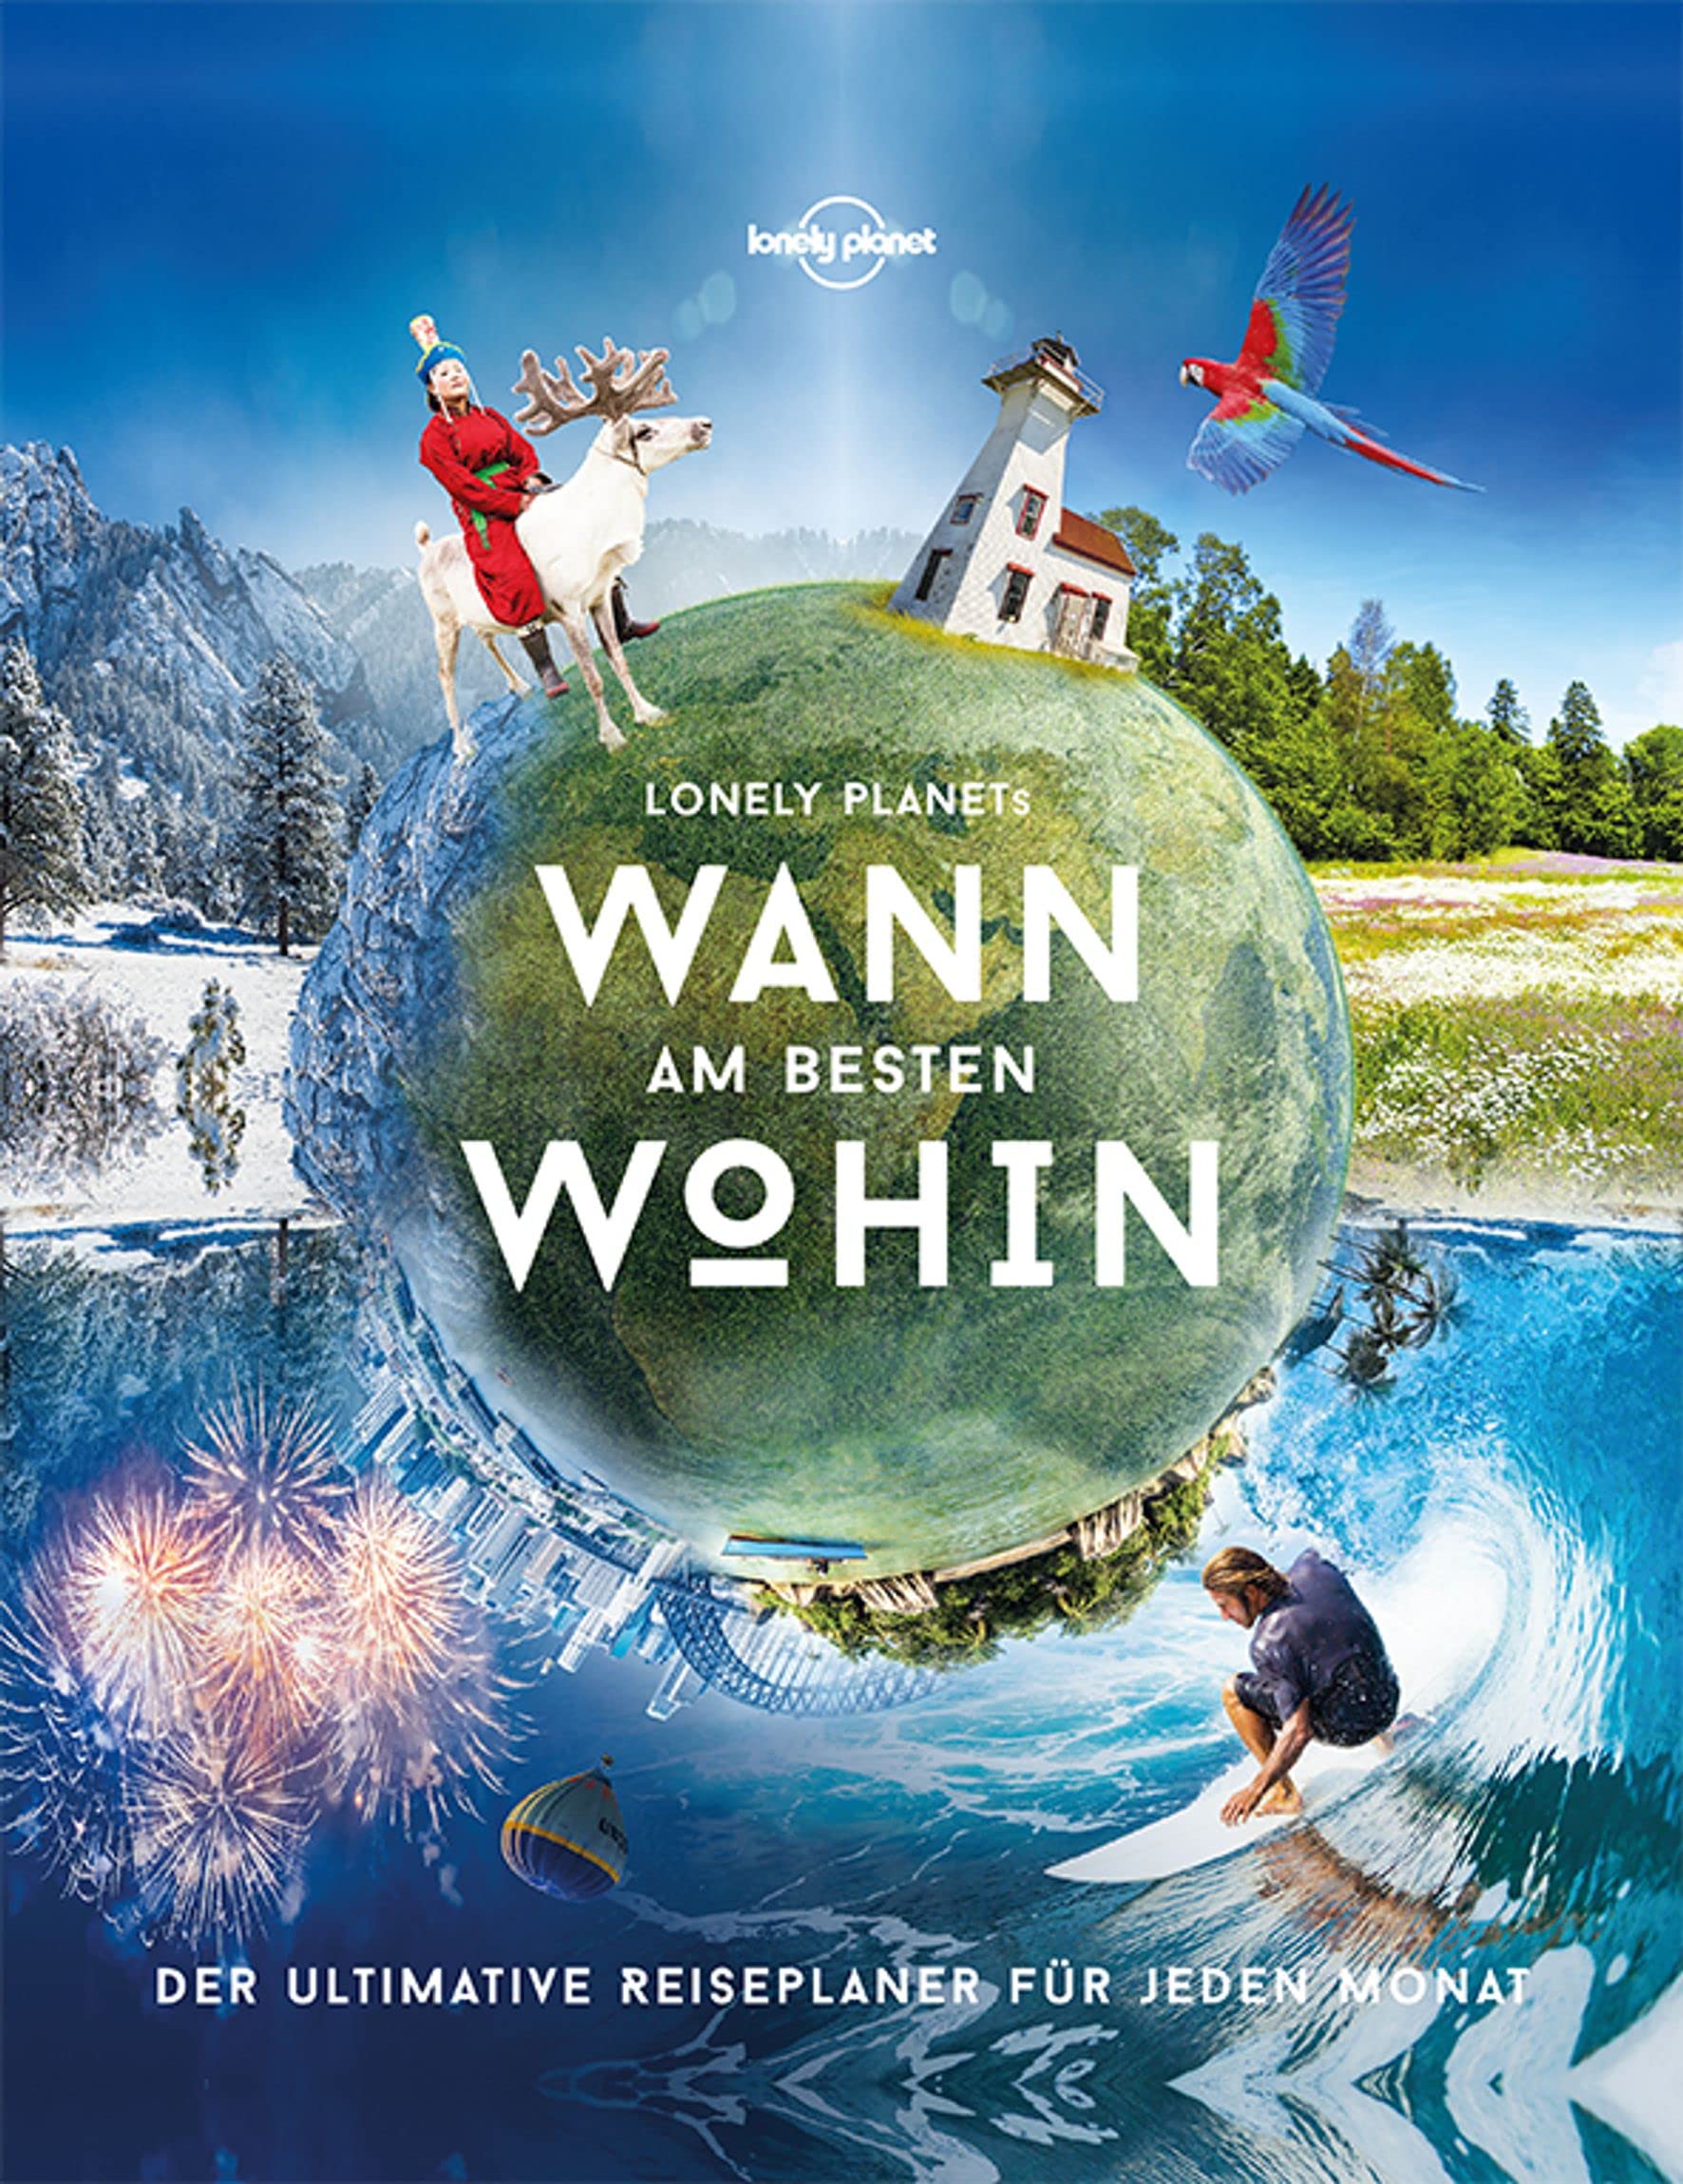 Wann wohin reisen, Autor: Hans Hörauf, Verlag: Lonely planet